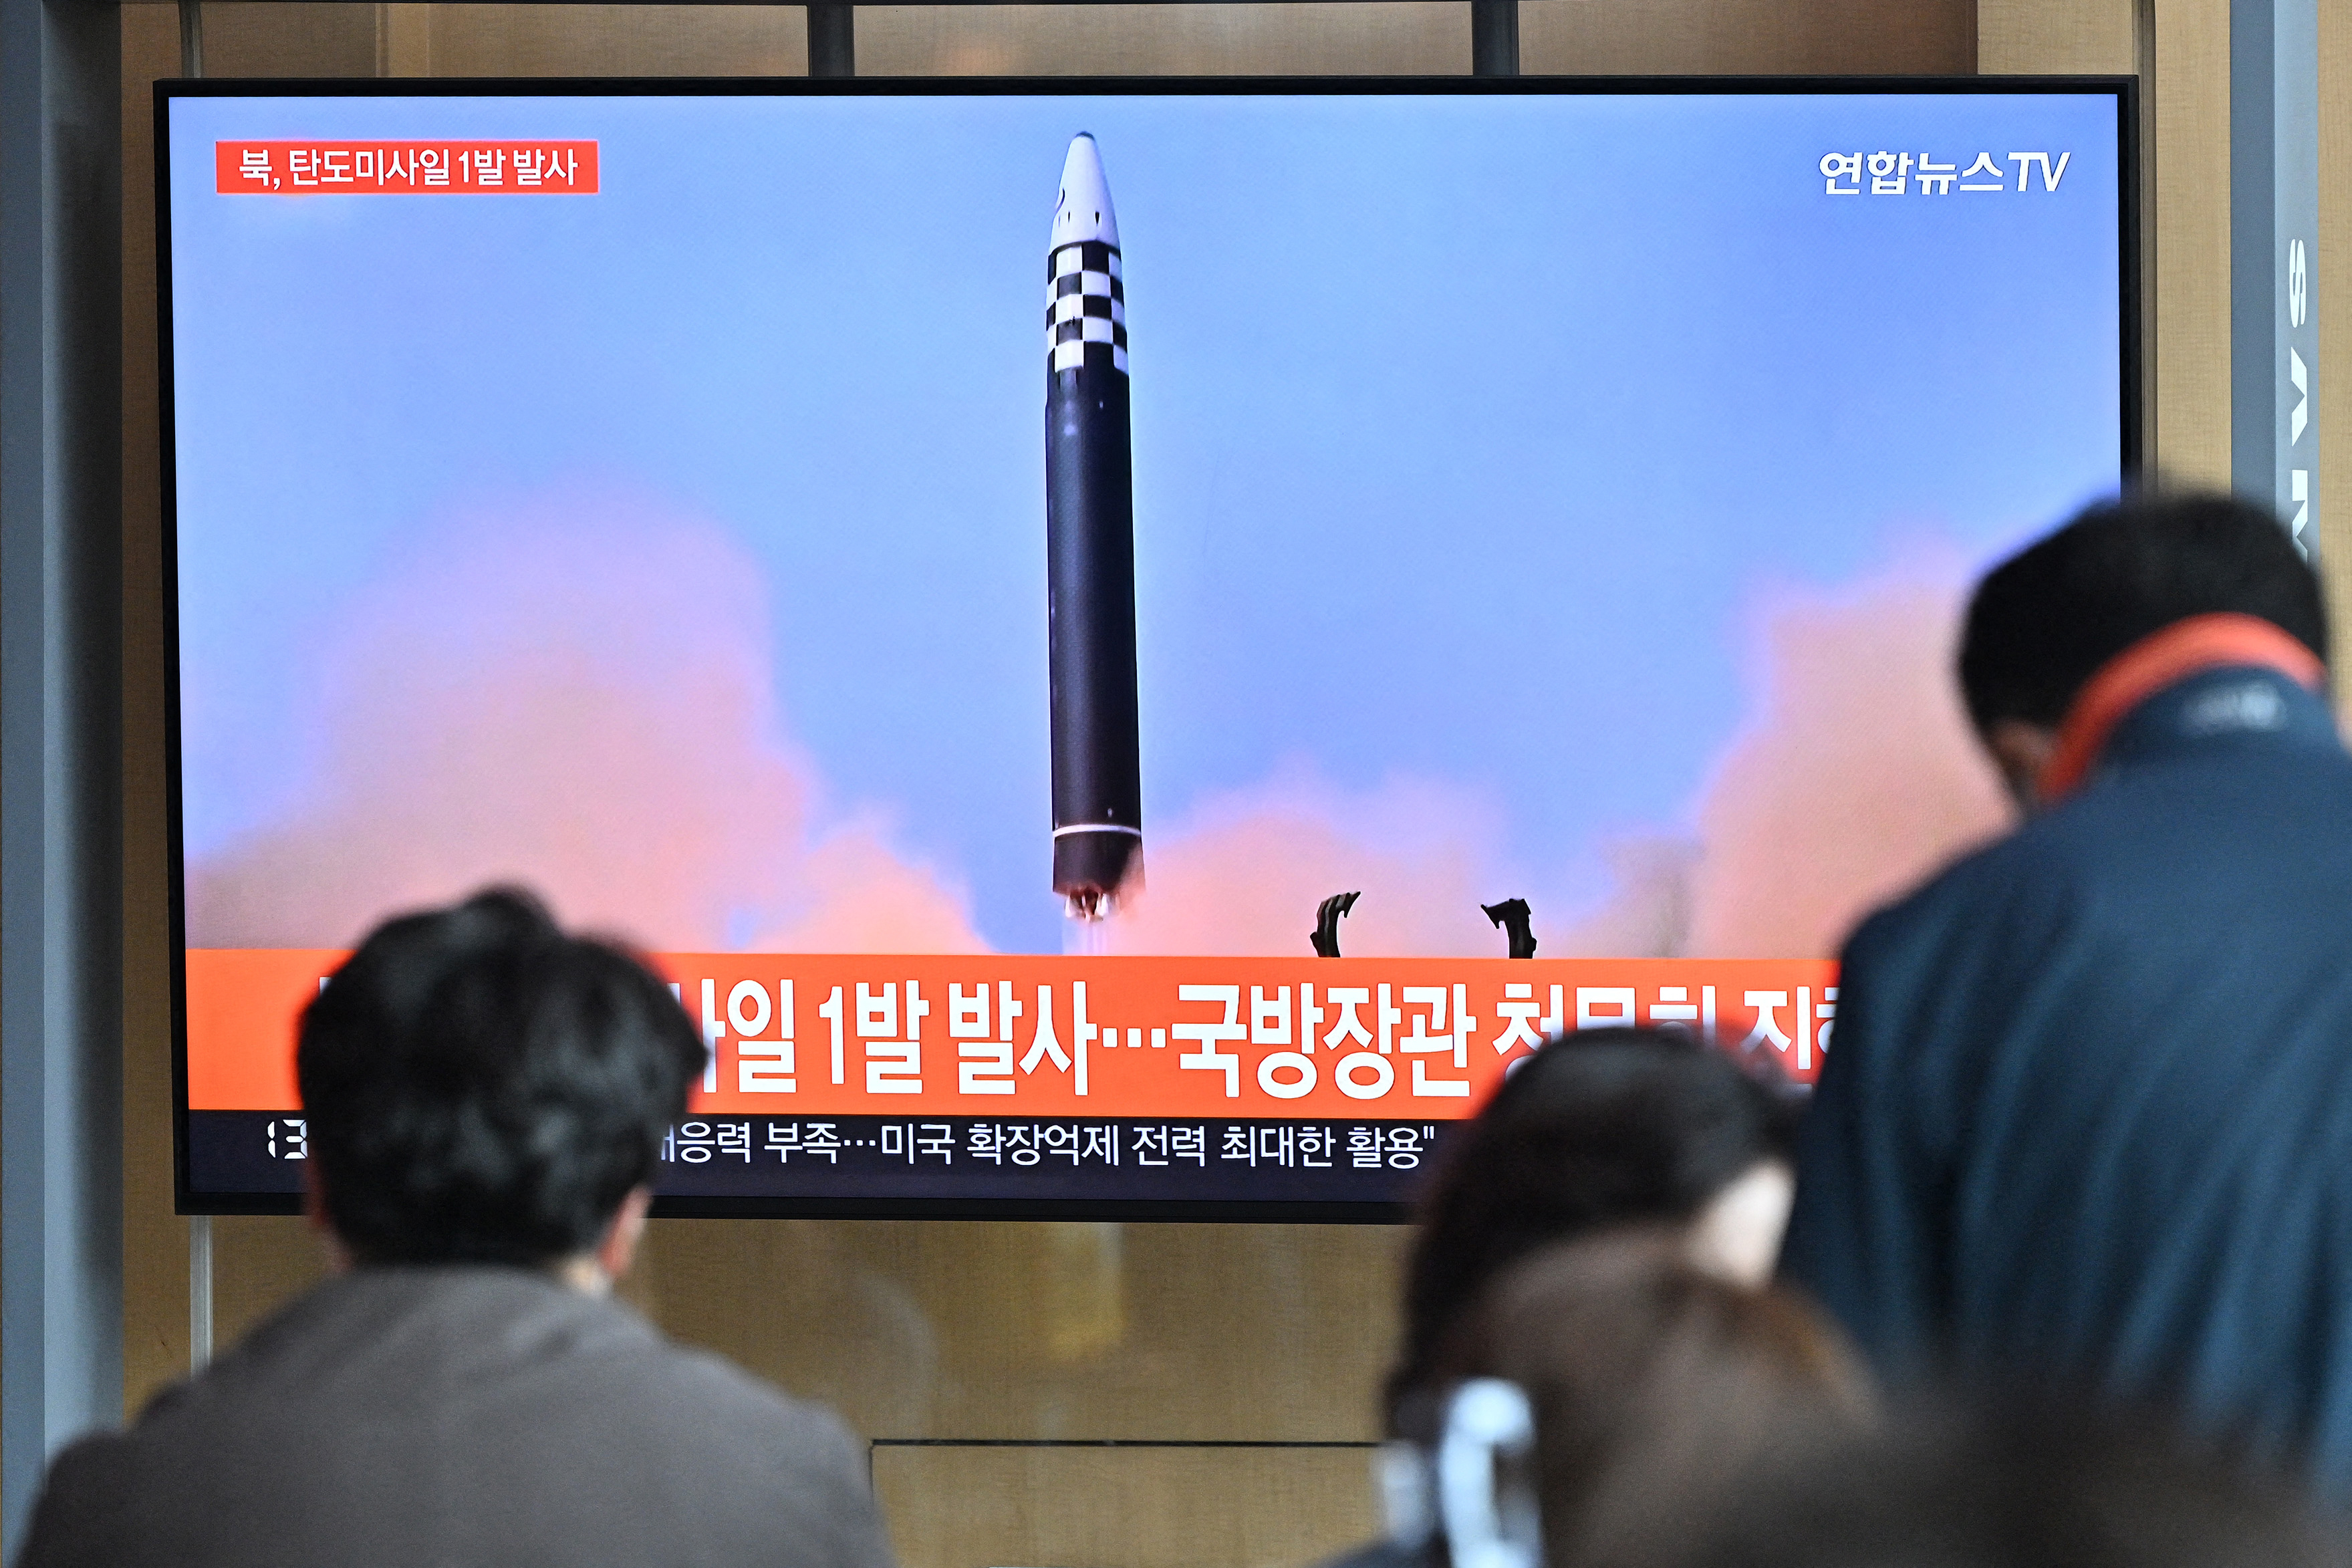 Észak-Korea megint rakétakísérletet hajthatott végre